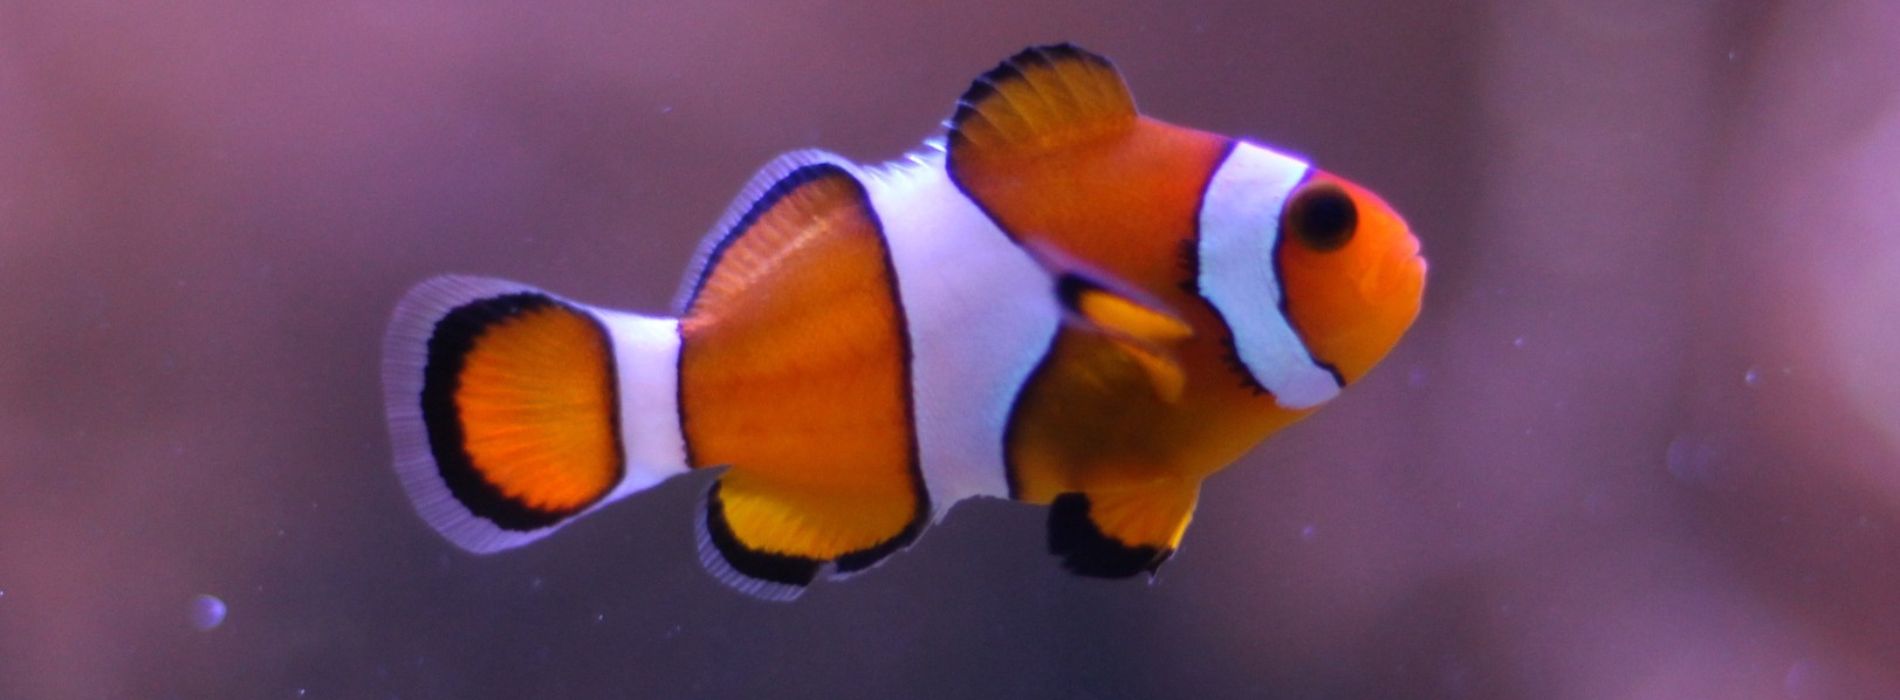 clownfish-in-aquarium